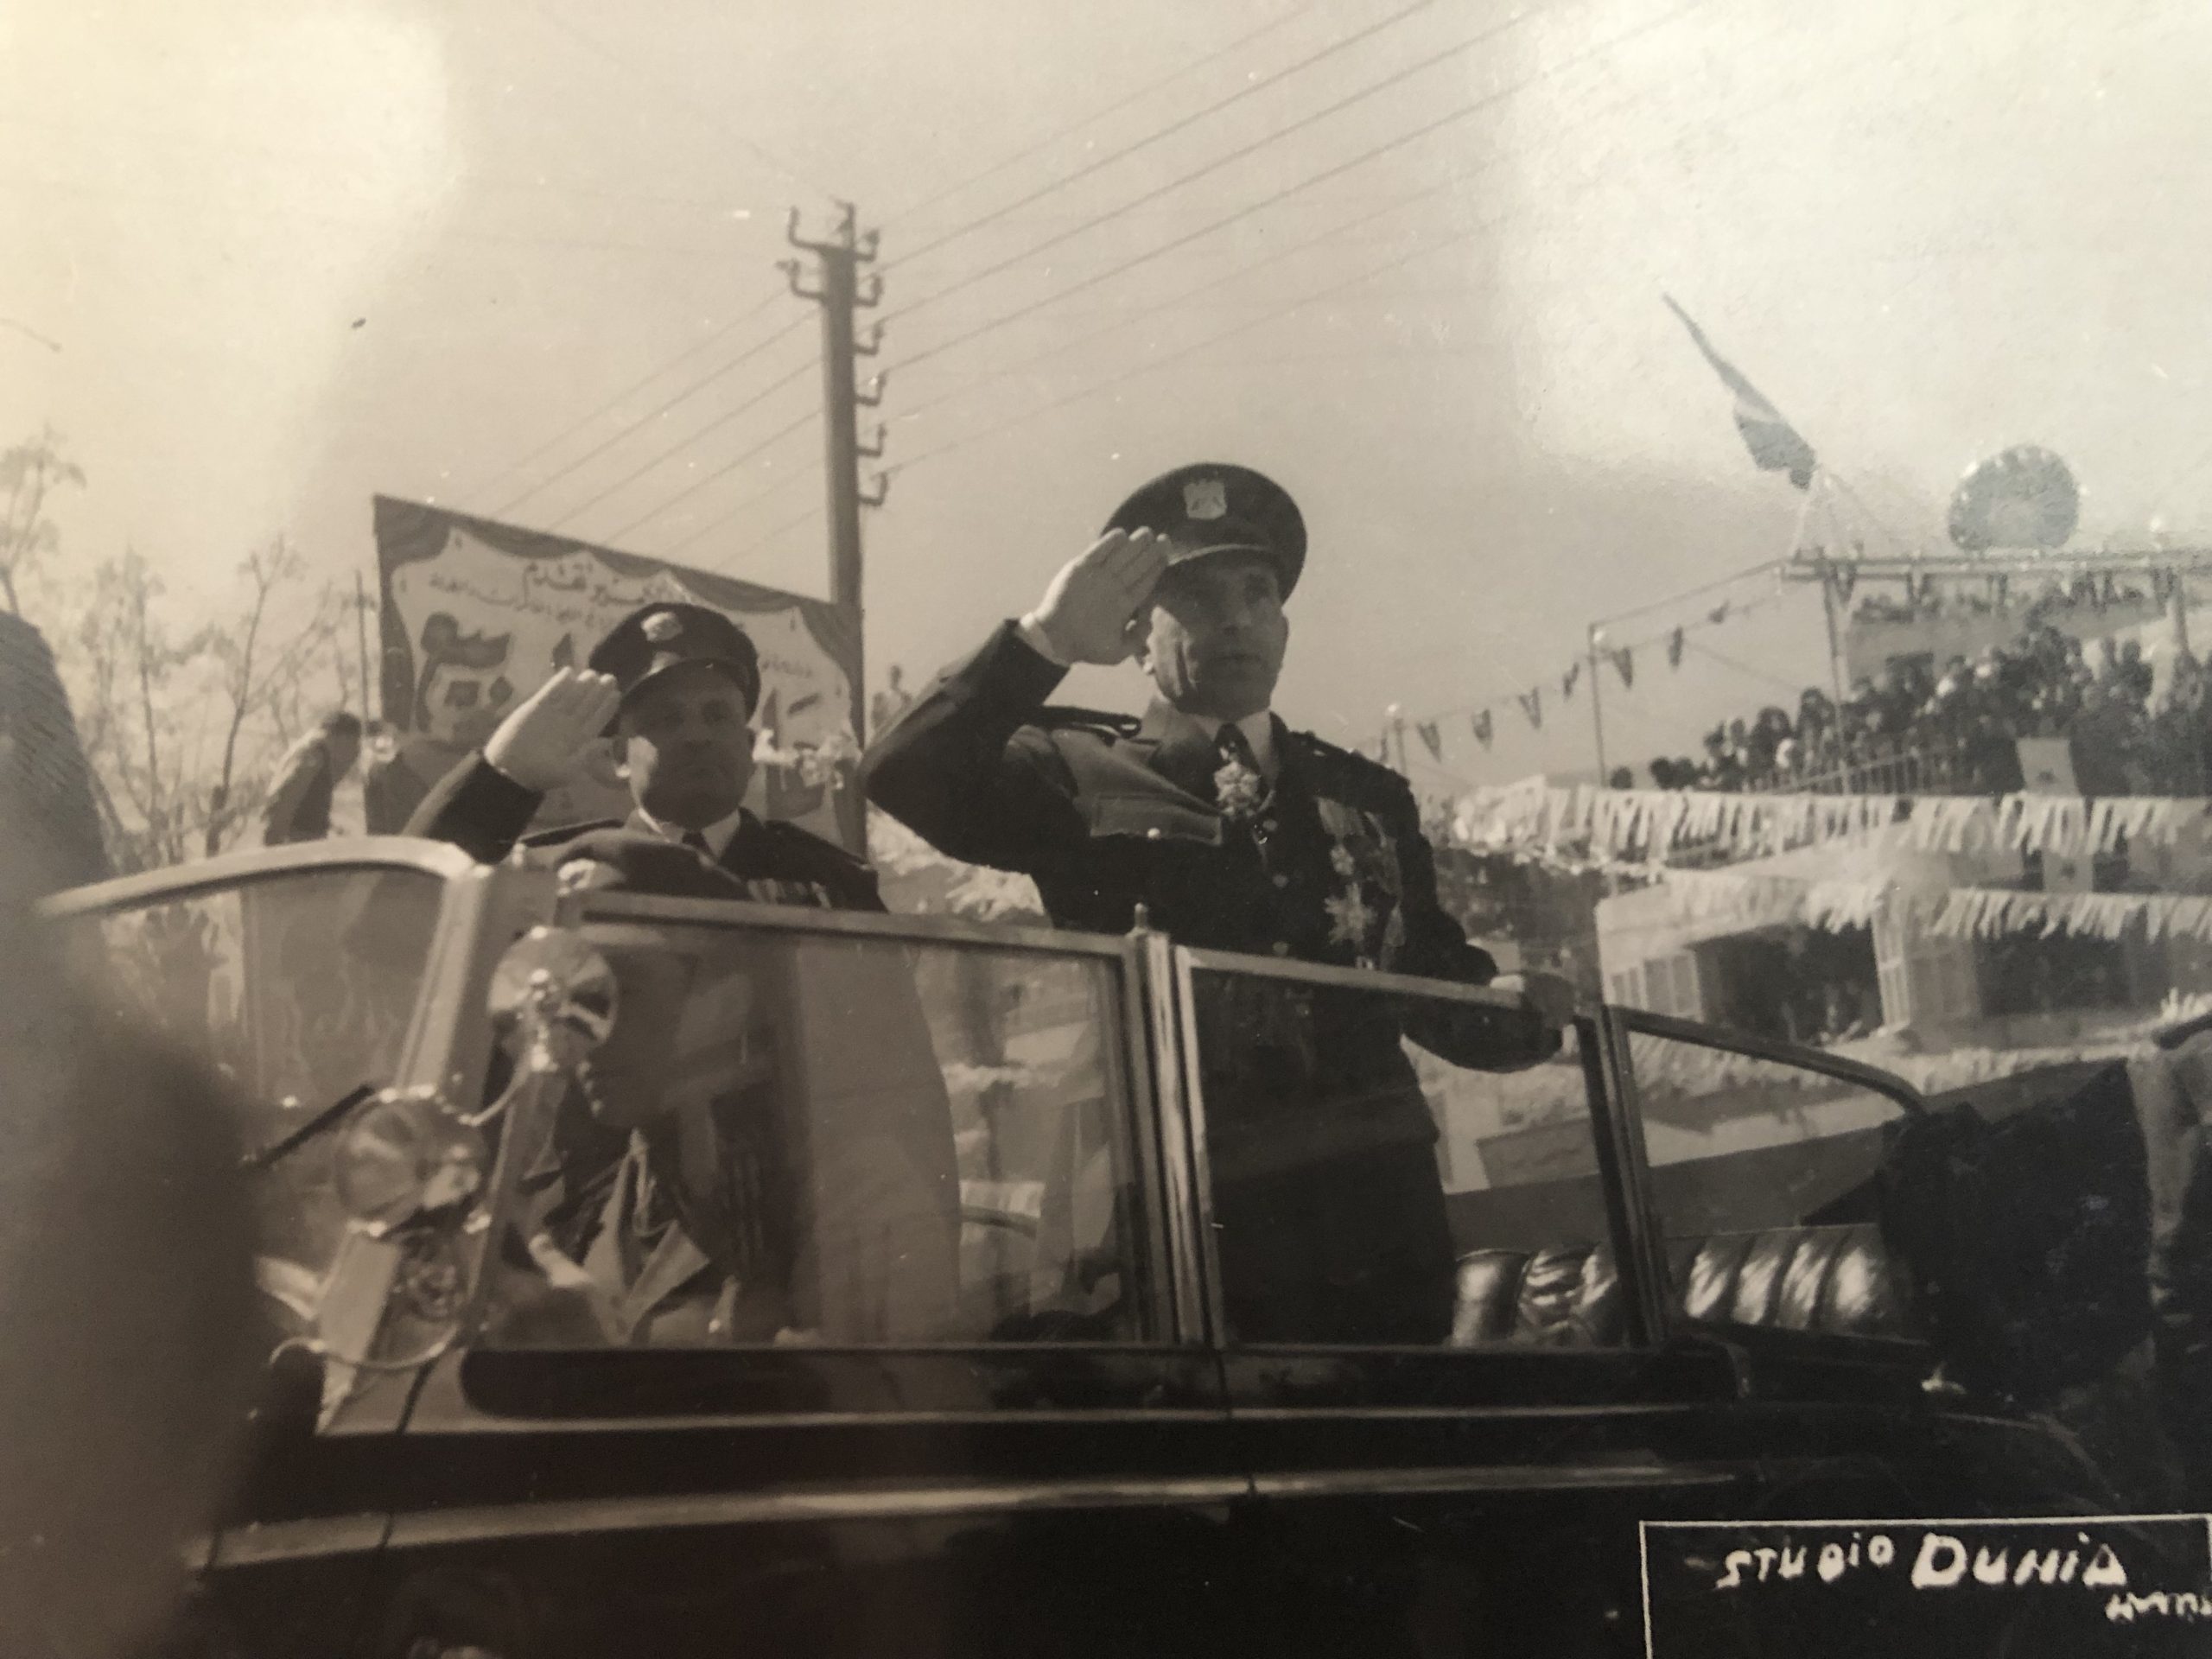 التاريخ السوري المعاصر - أديب الشيشكلي وجمال الفيصل في العرض العسكري بمناسبة شراء صفقة أسلحة (3)